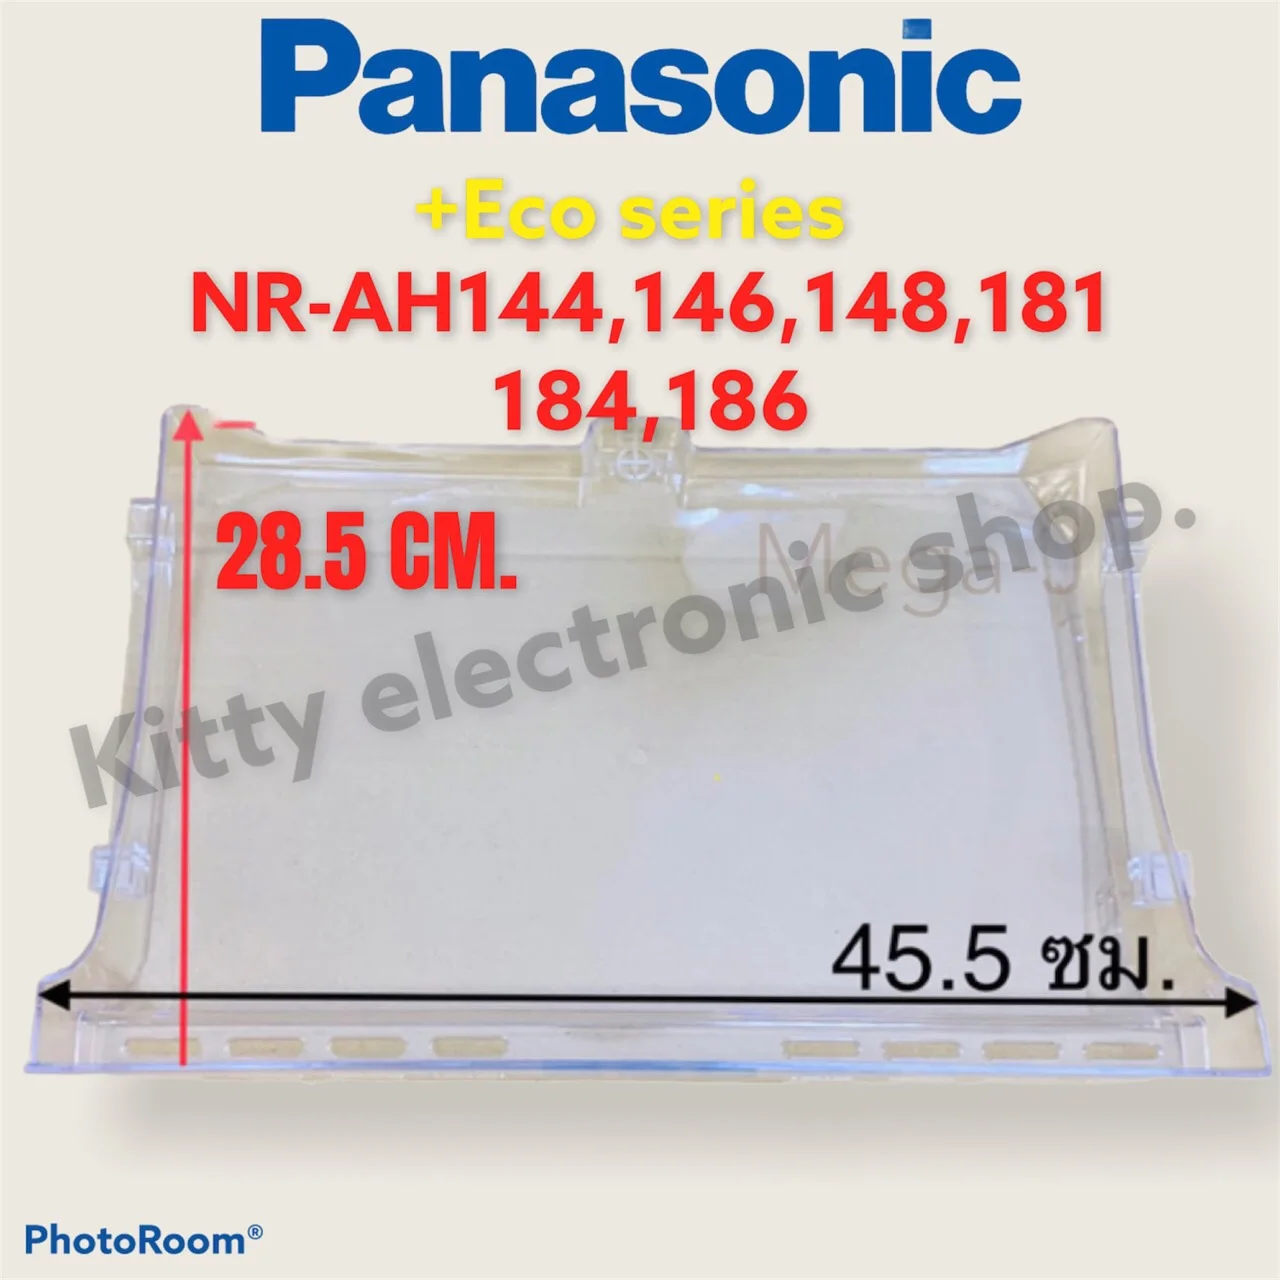 ชั้นวางของใต้ช่องฟรีส Panasonic พานาโซนิค Eco seriesรุ่นNR-AH144,146,181,184 #เครื่องใช้ไฟฟ้า#อะไหล่#ตู้เย็น#พานา